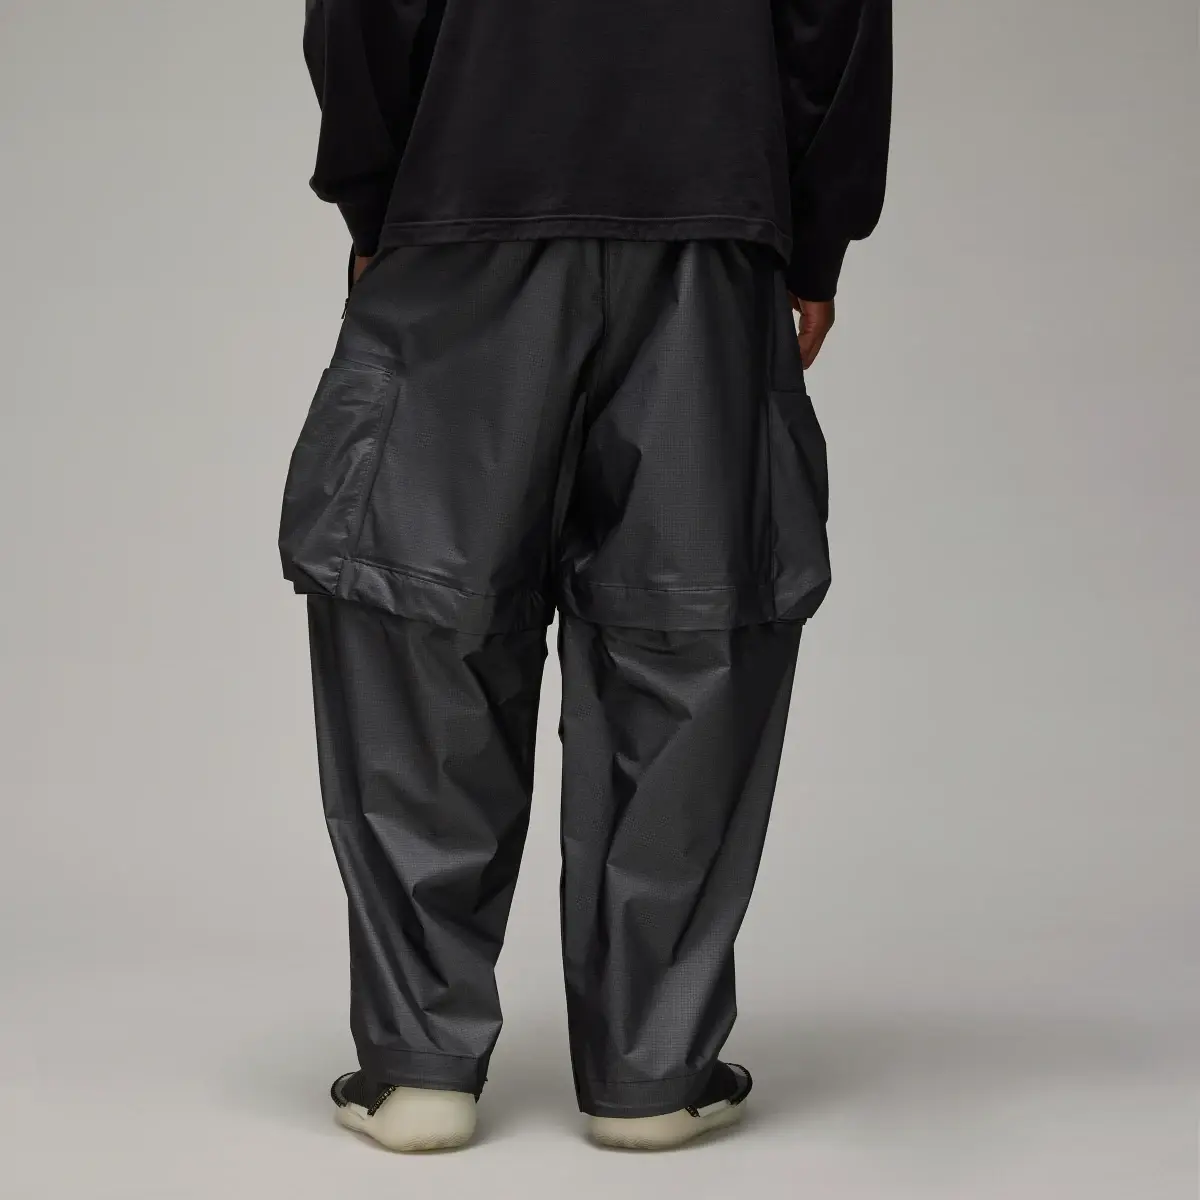 Adidas Pantalón GORE-TEX Y-3. 3